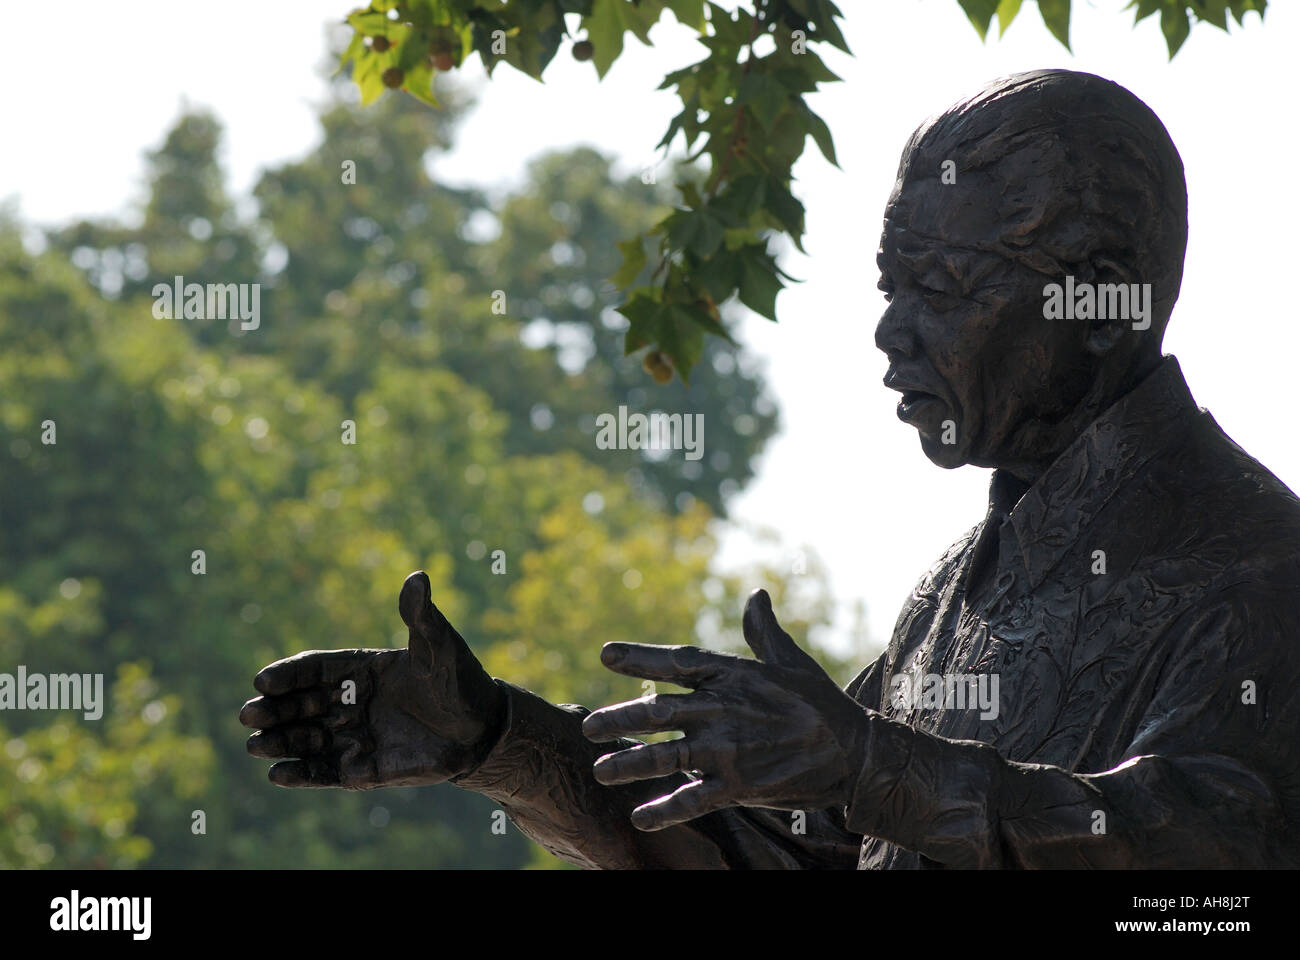 Statue de Nelson Mandela à la place du Parlement, Londres, Angleterre, Royaume-Uni Banque D'Images